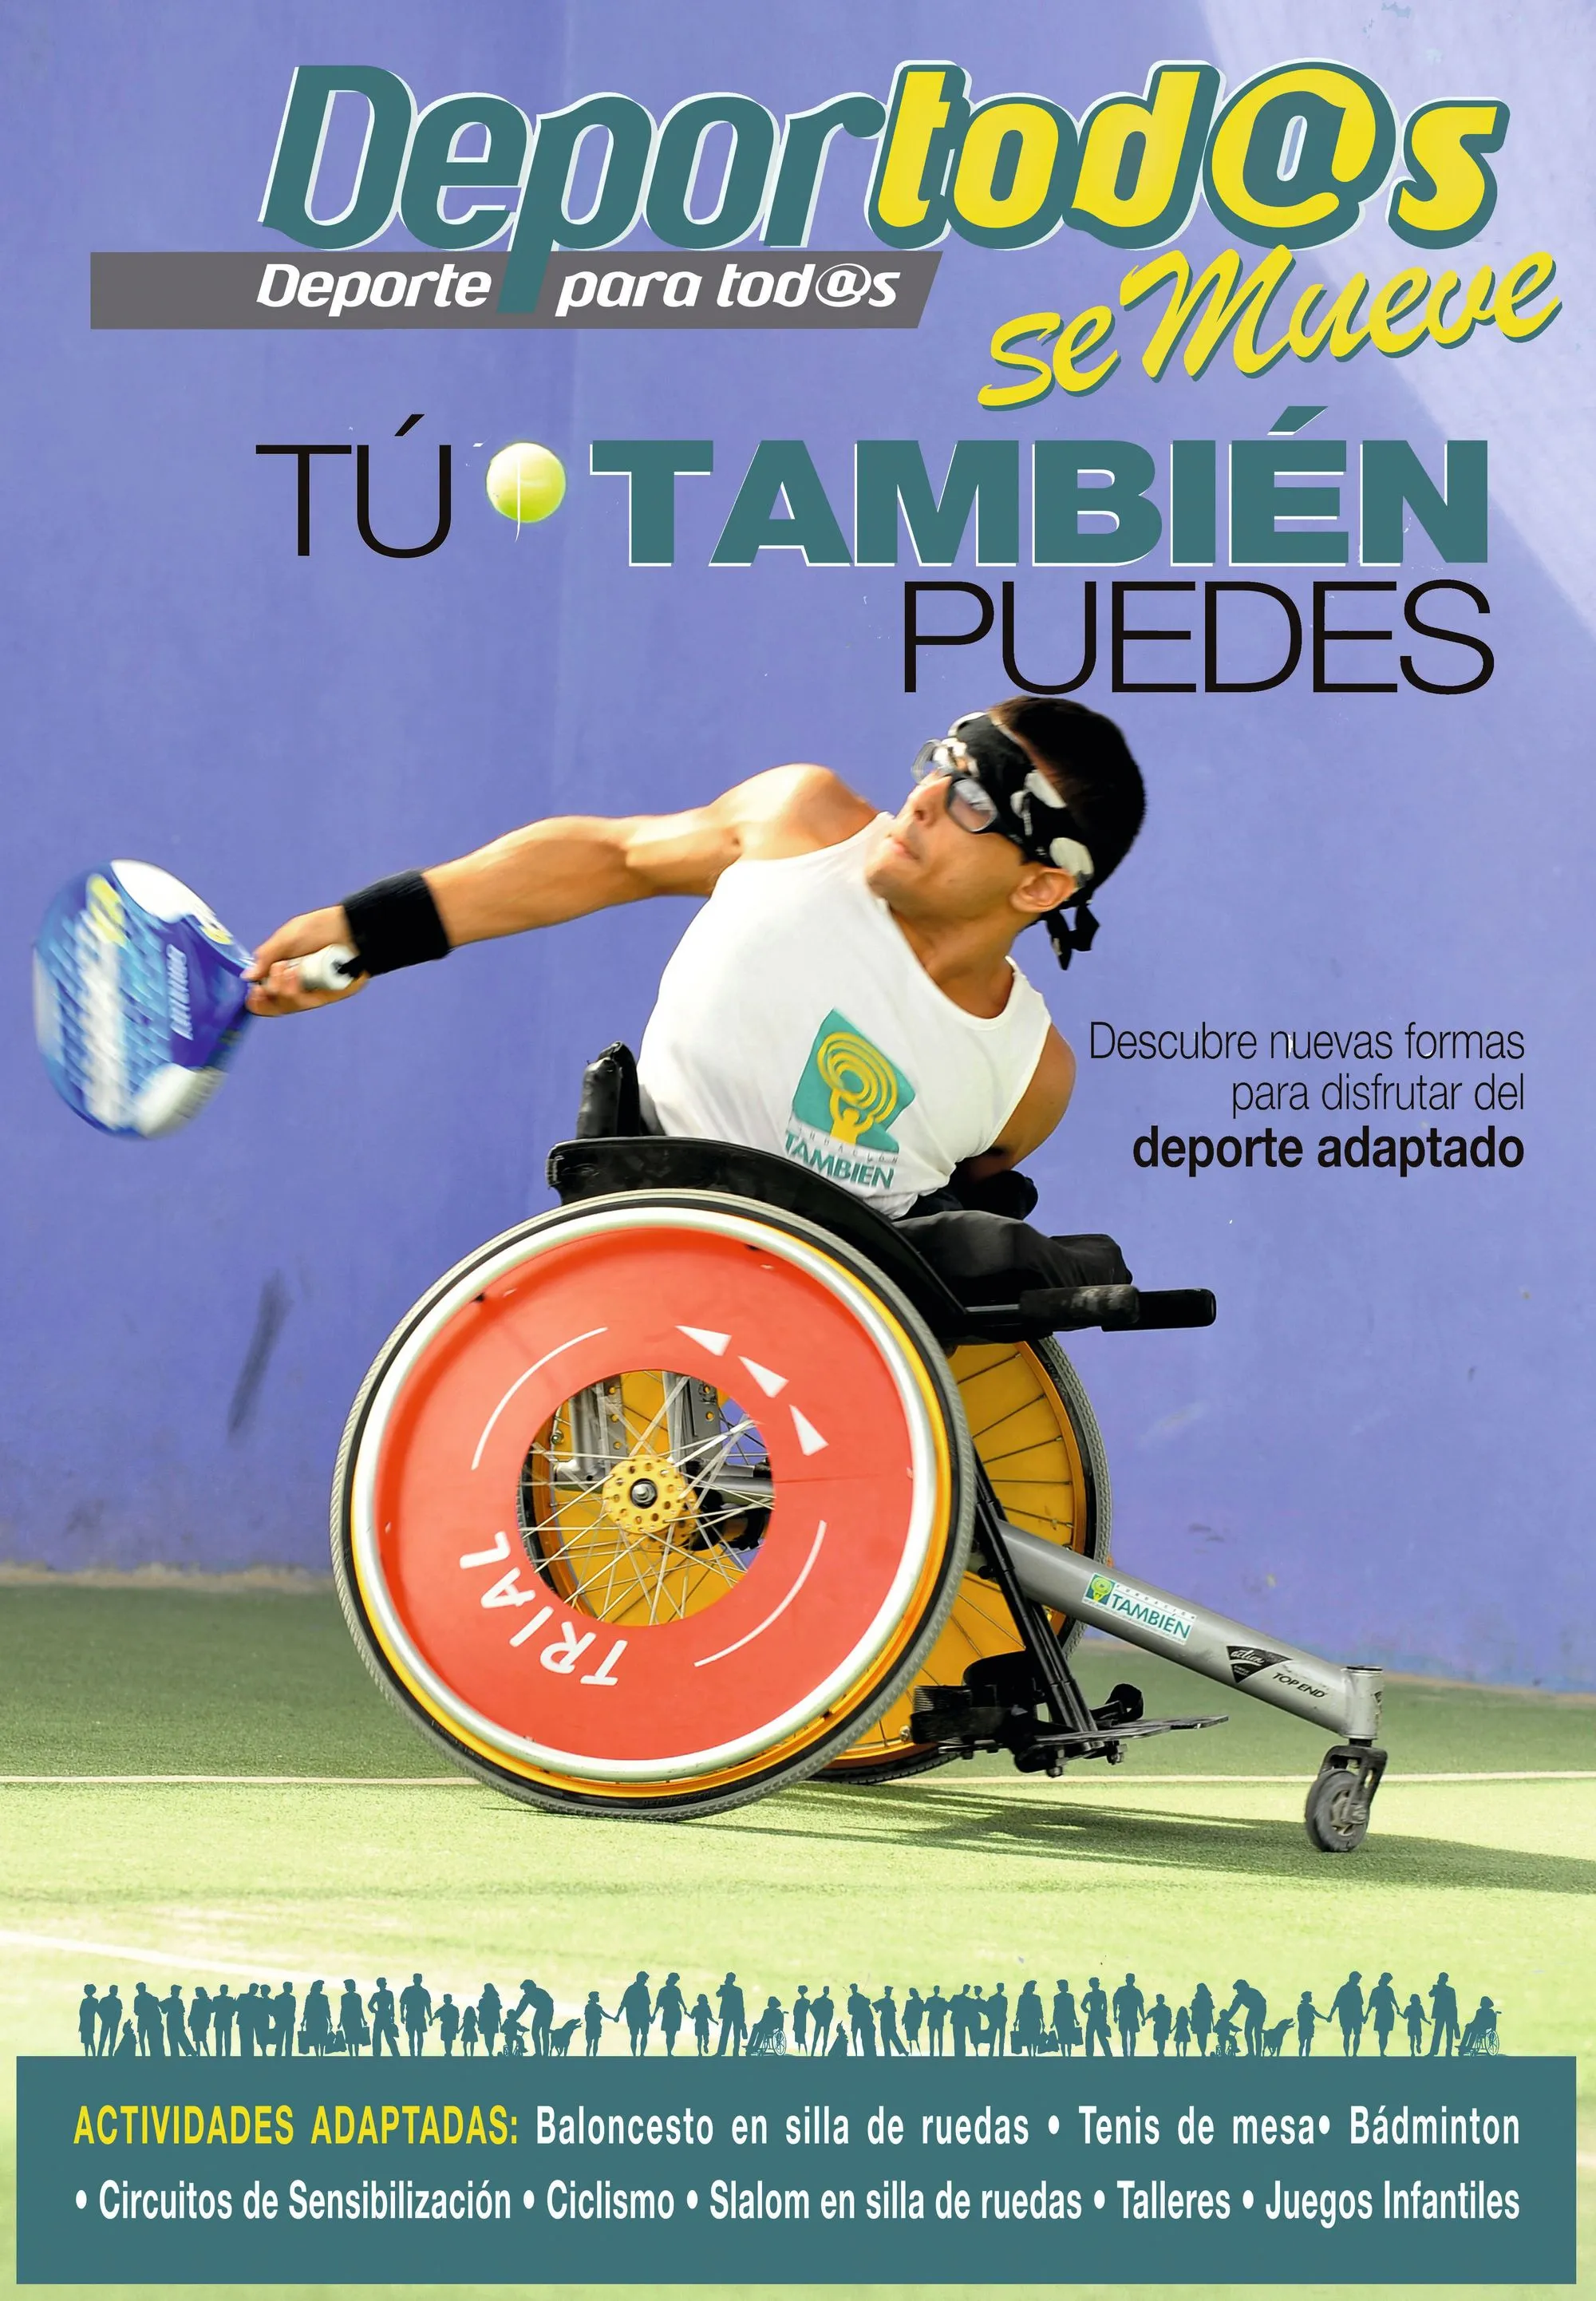 Cartel anunciando una jornada deportiva de 
integración, San Fernando, 2012.